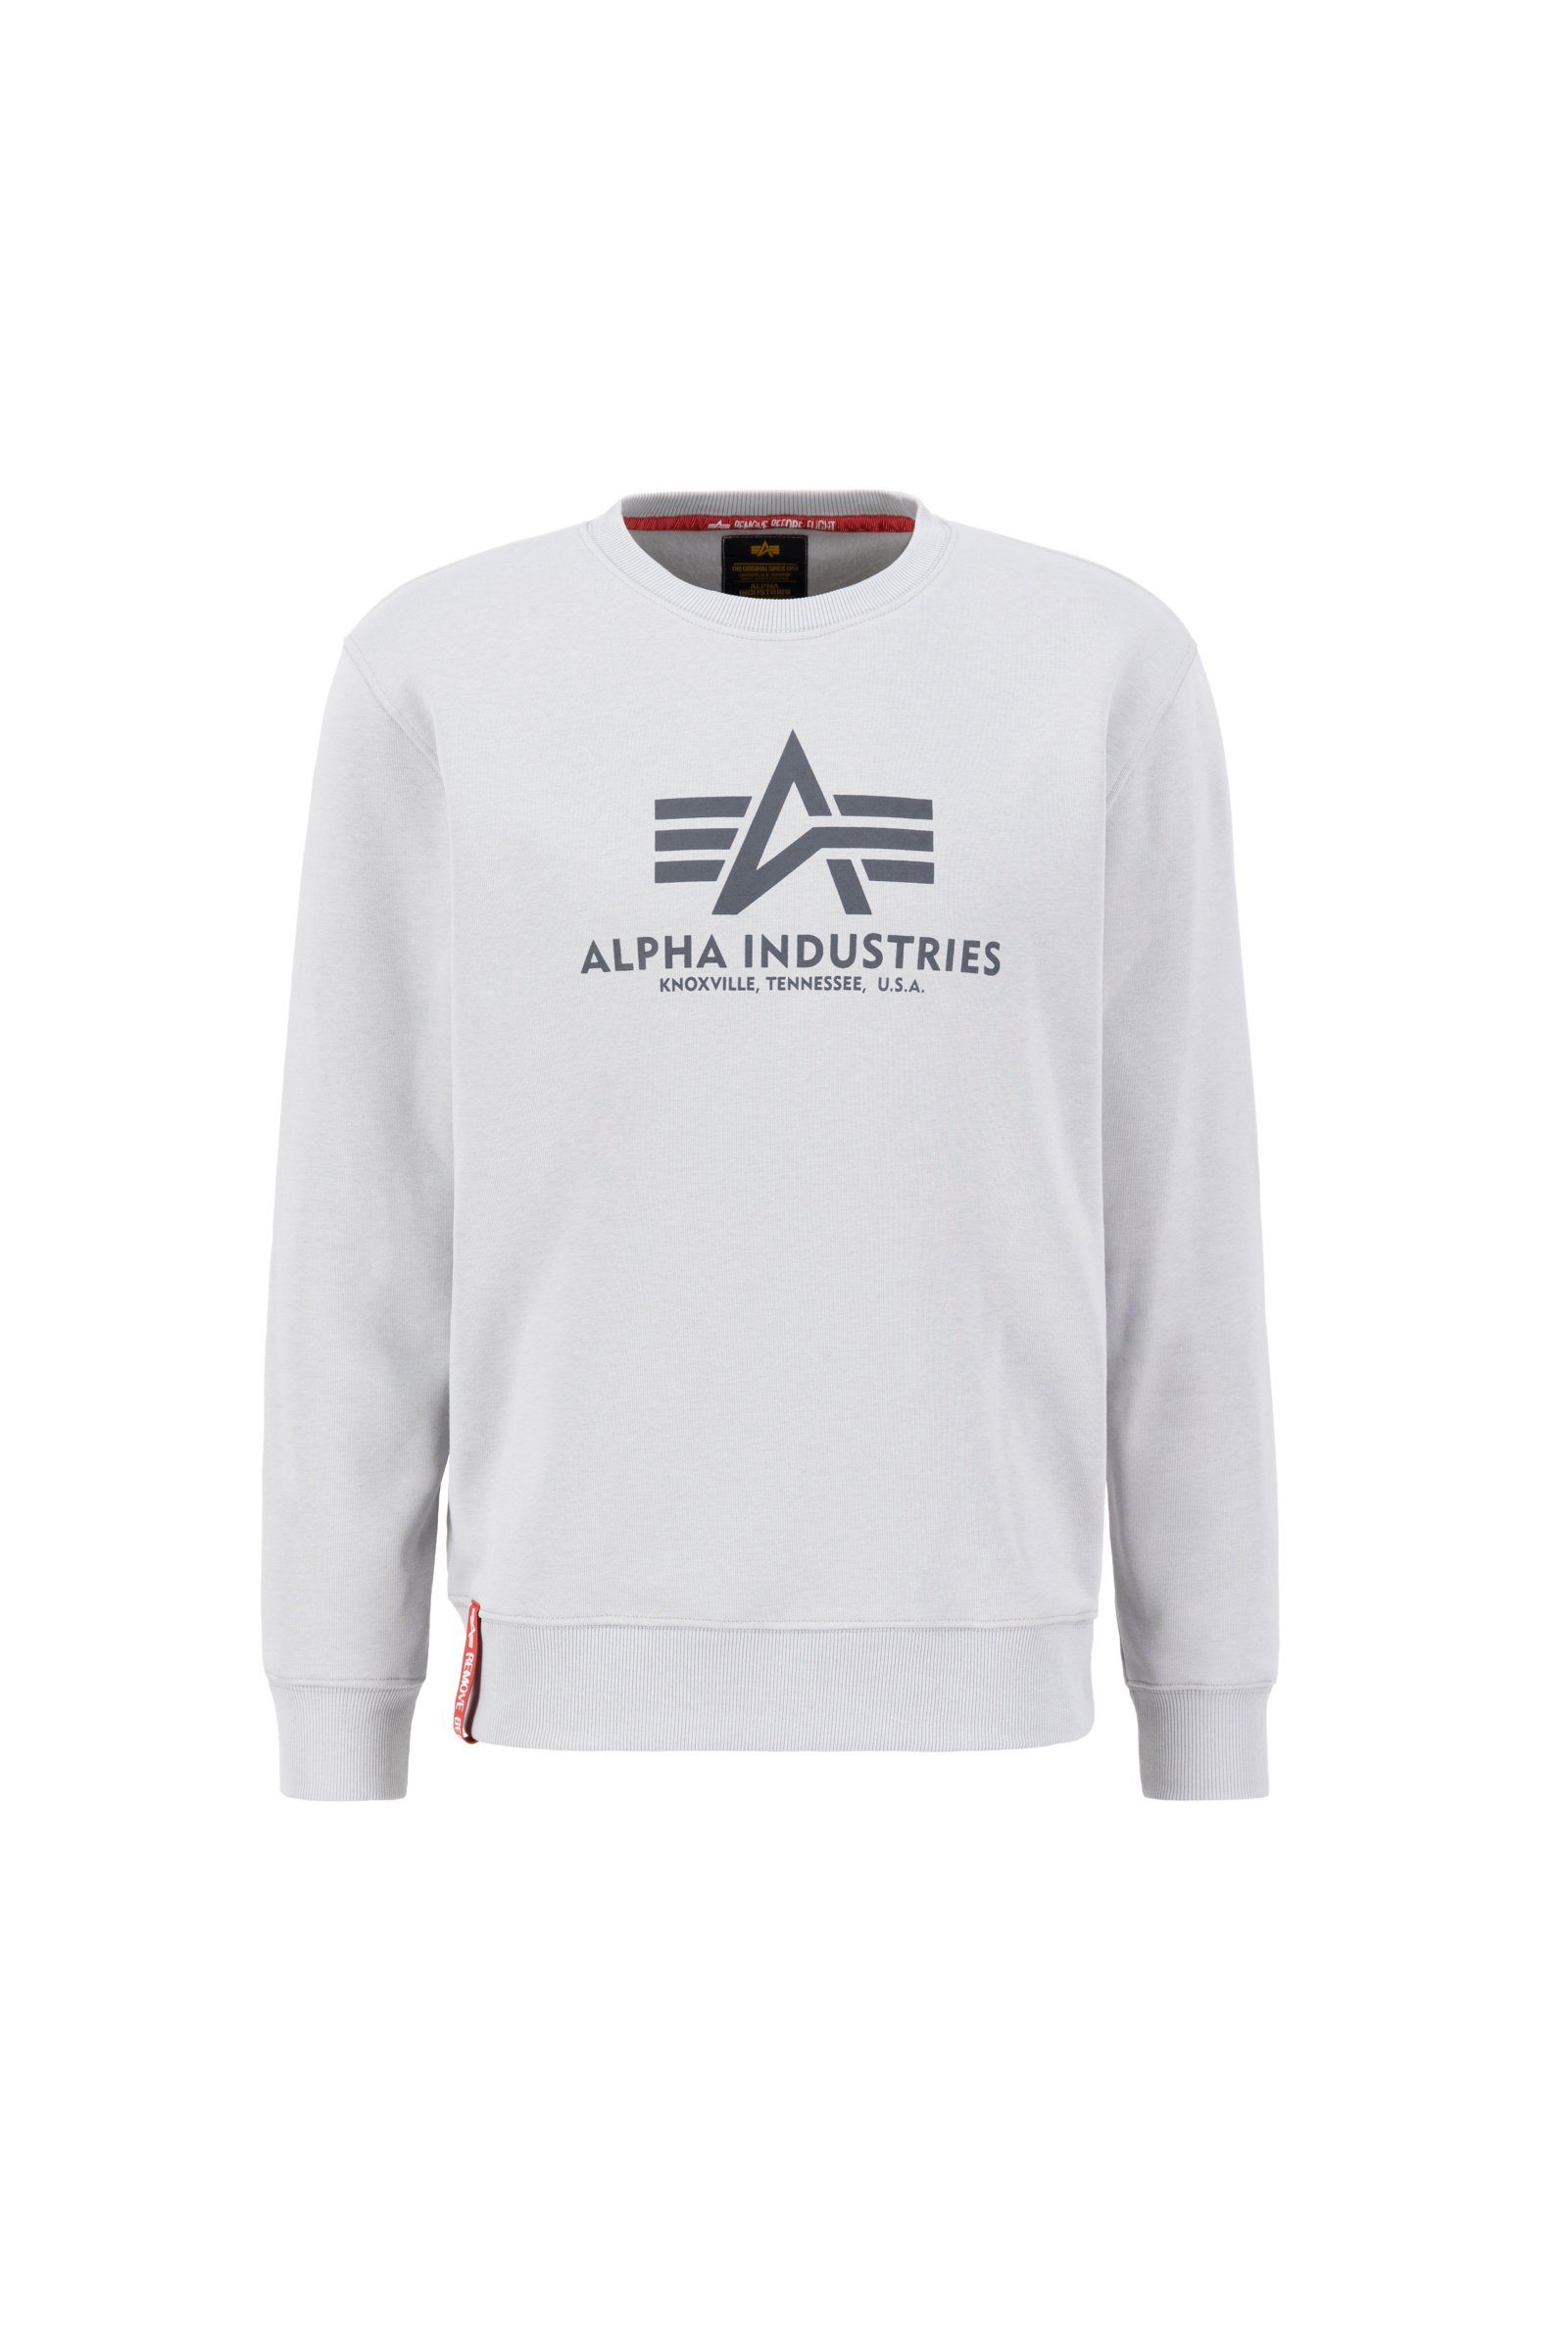 Alpha Industries Sweatshirt Alpha Industries Herren Sweatshirt Basic pastel grey